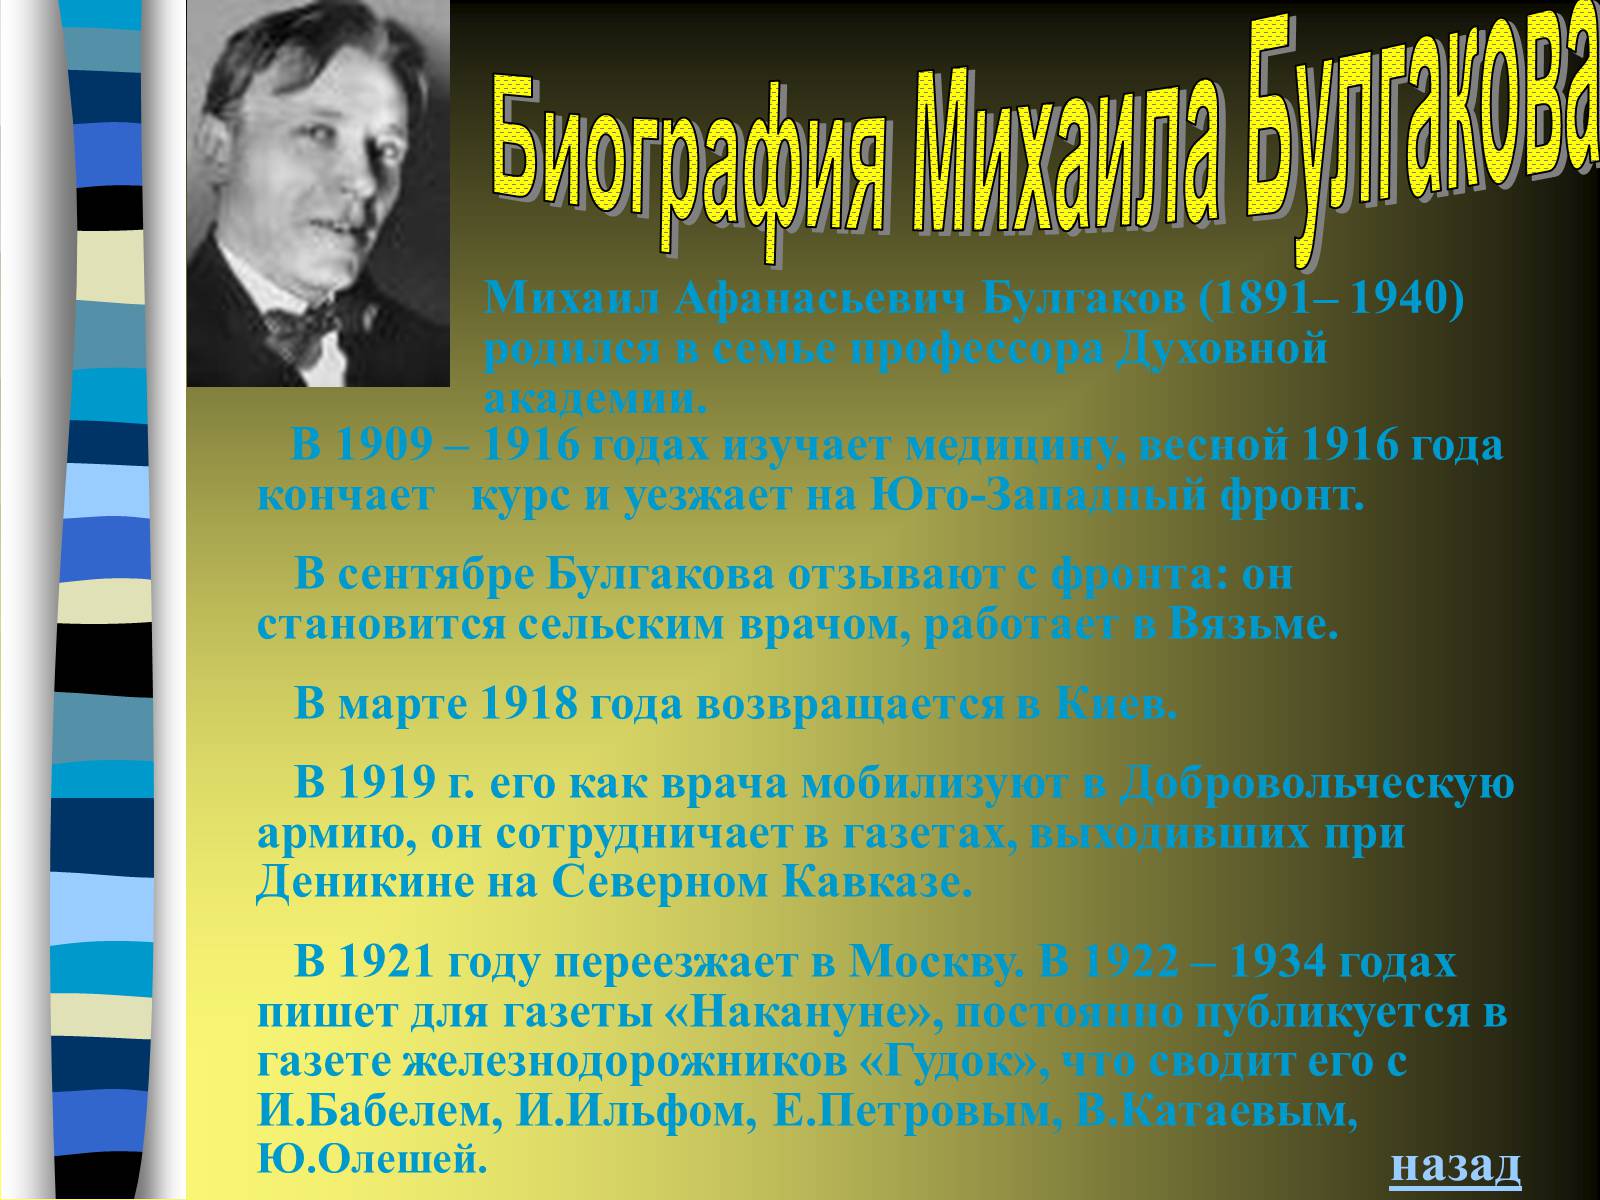 Михаил Афанасьевич Булгаков 1909-1916